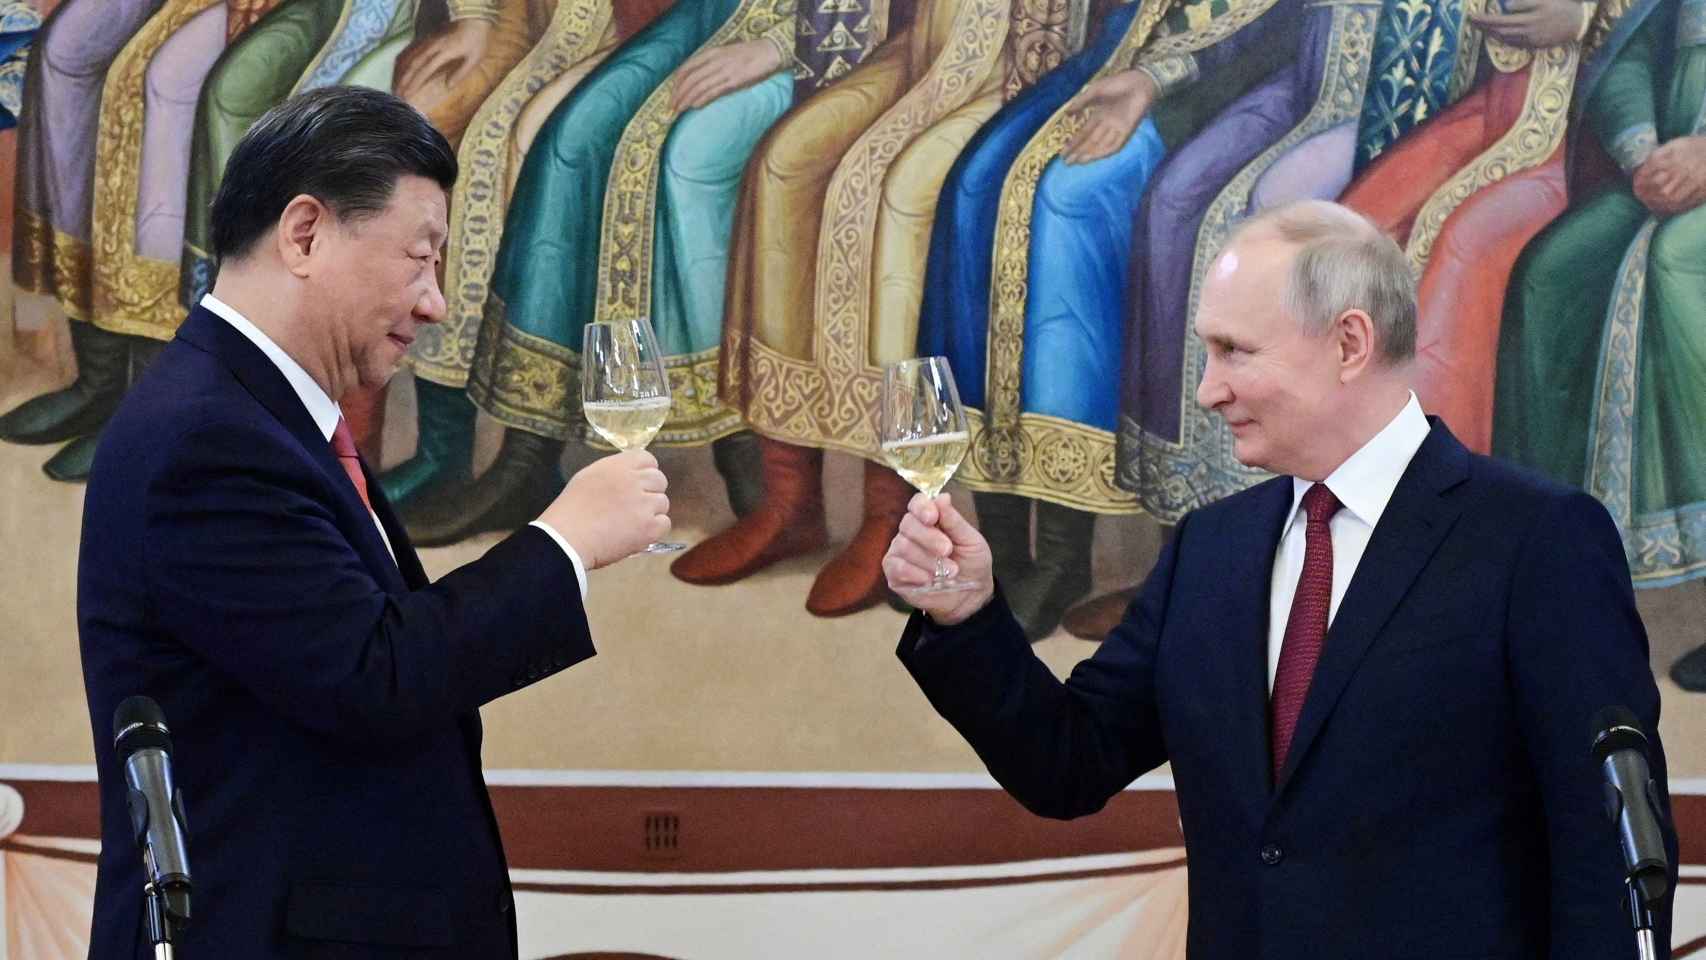 El presidente ruso Vladimir Putin y el presidente chino Xi Jinping asisten a una recepción en Moscú.